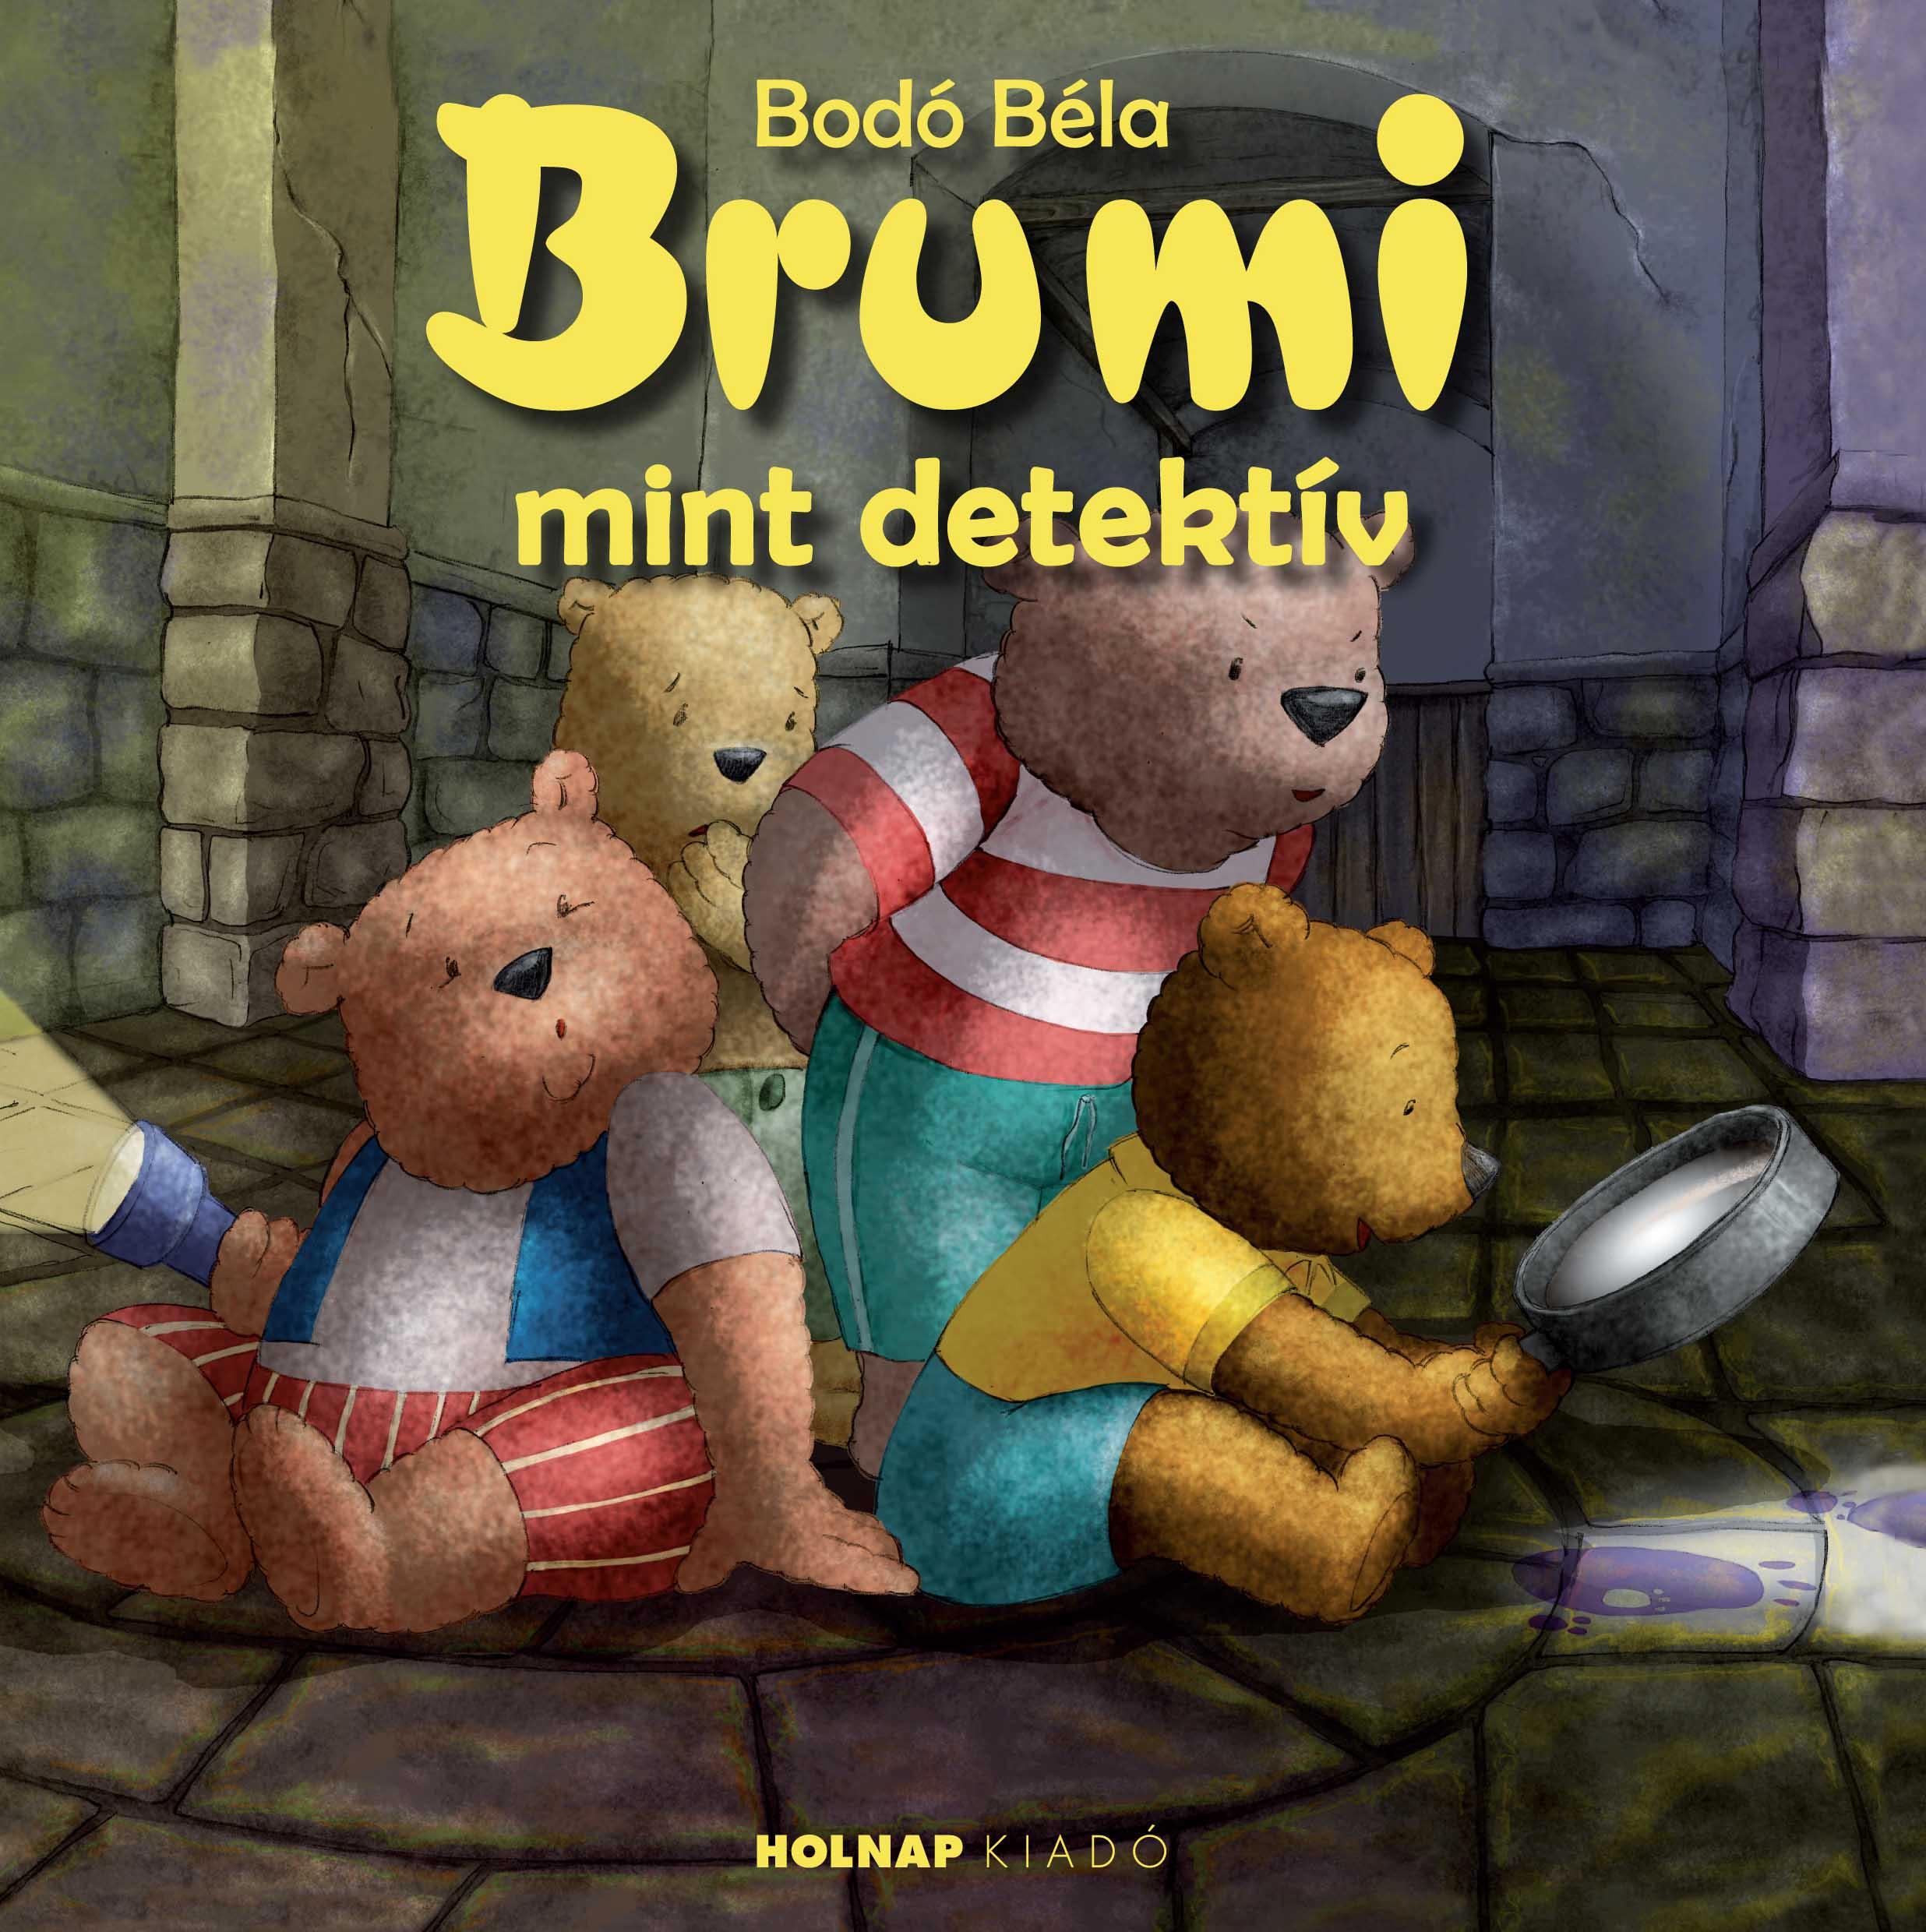 Brumi mint detektív - Bodó Béla | 